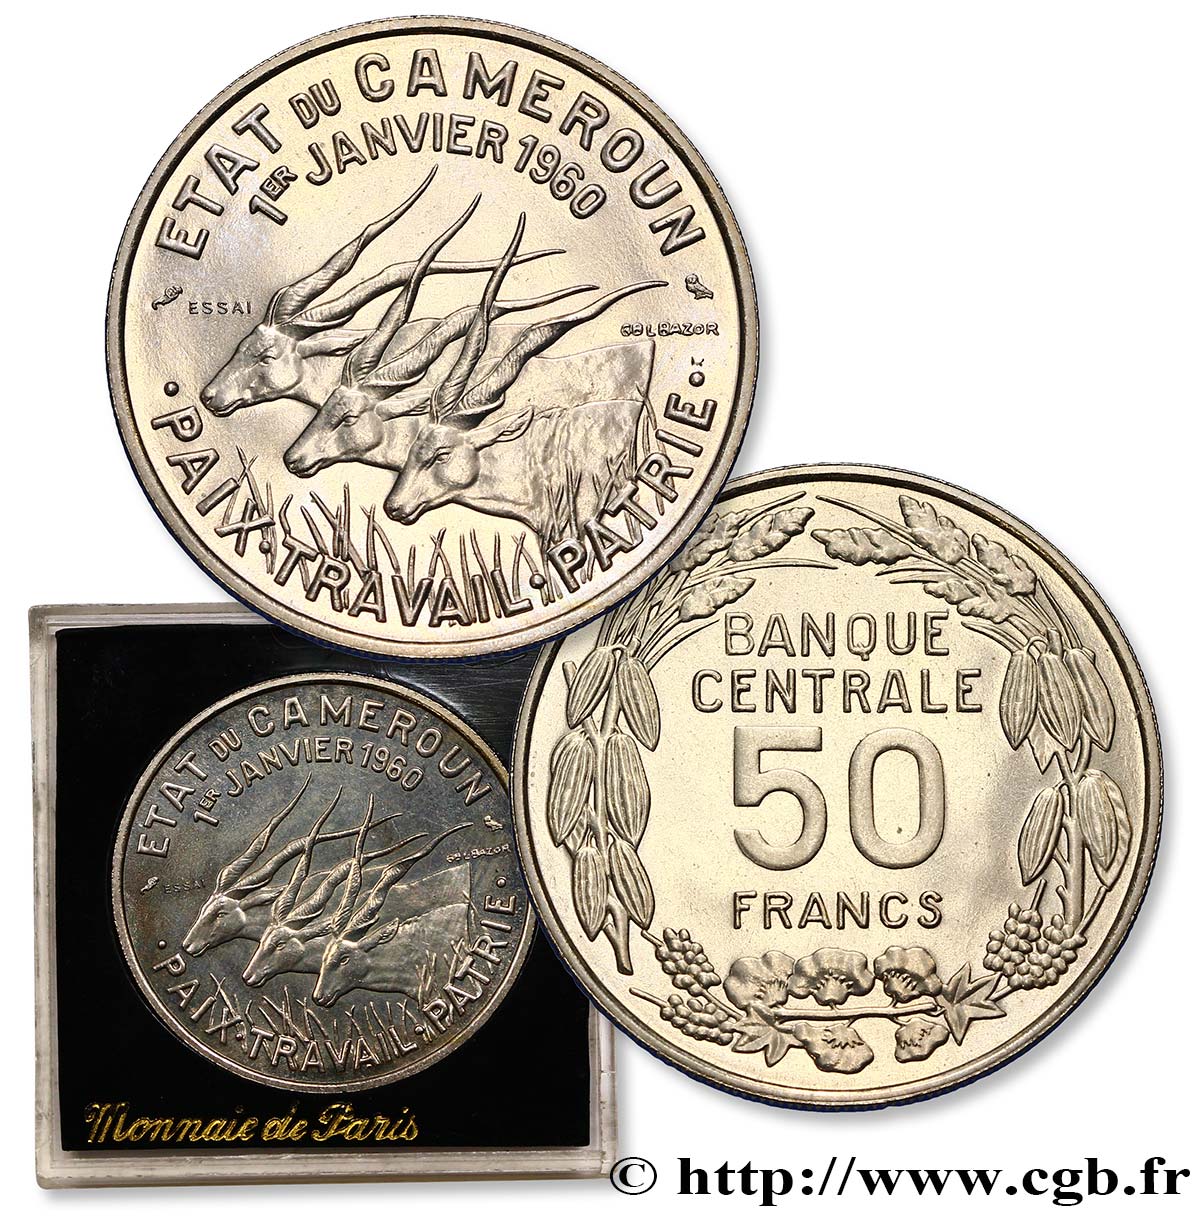 CAMEROON Essai de 50 Francs Etat du Cameroun, commémoration de l’indépendance, antilopes 1960 Paris MS 